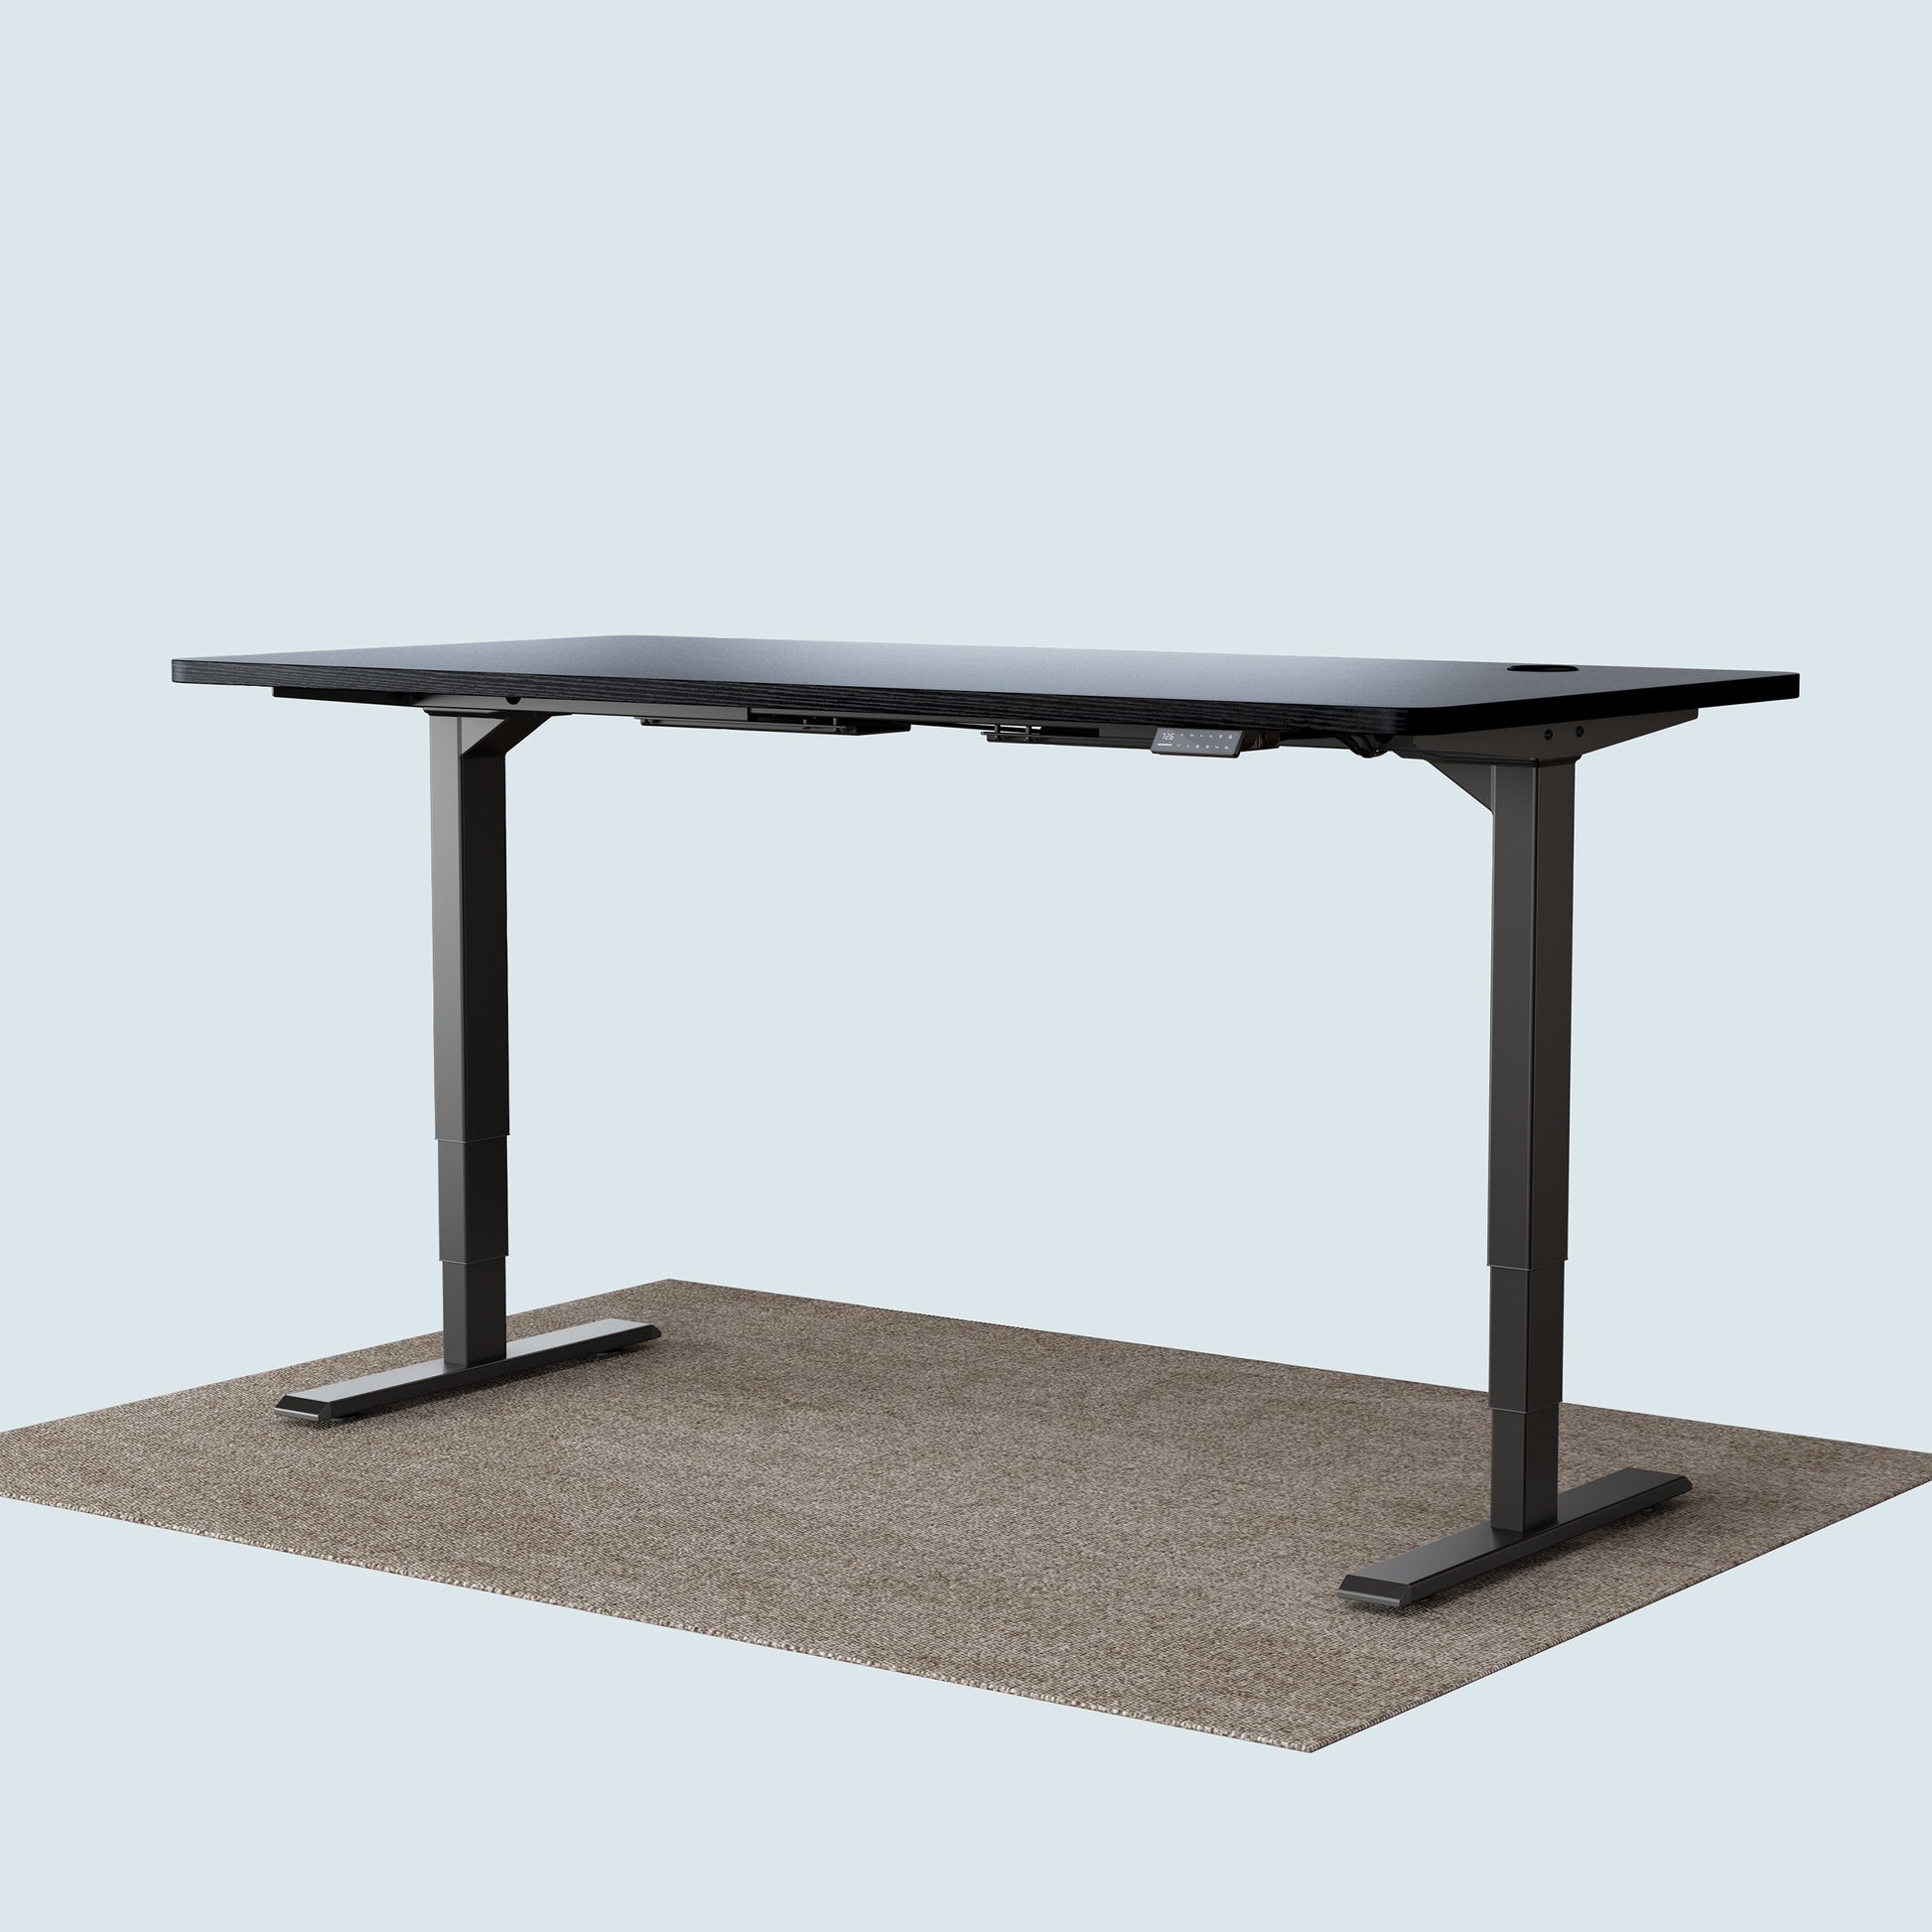 T2 Pro Plus height adjustable desk black frame and 160x80cm black desktop